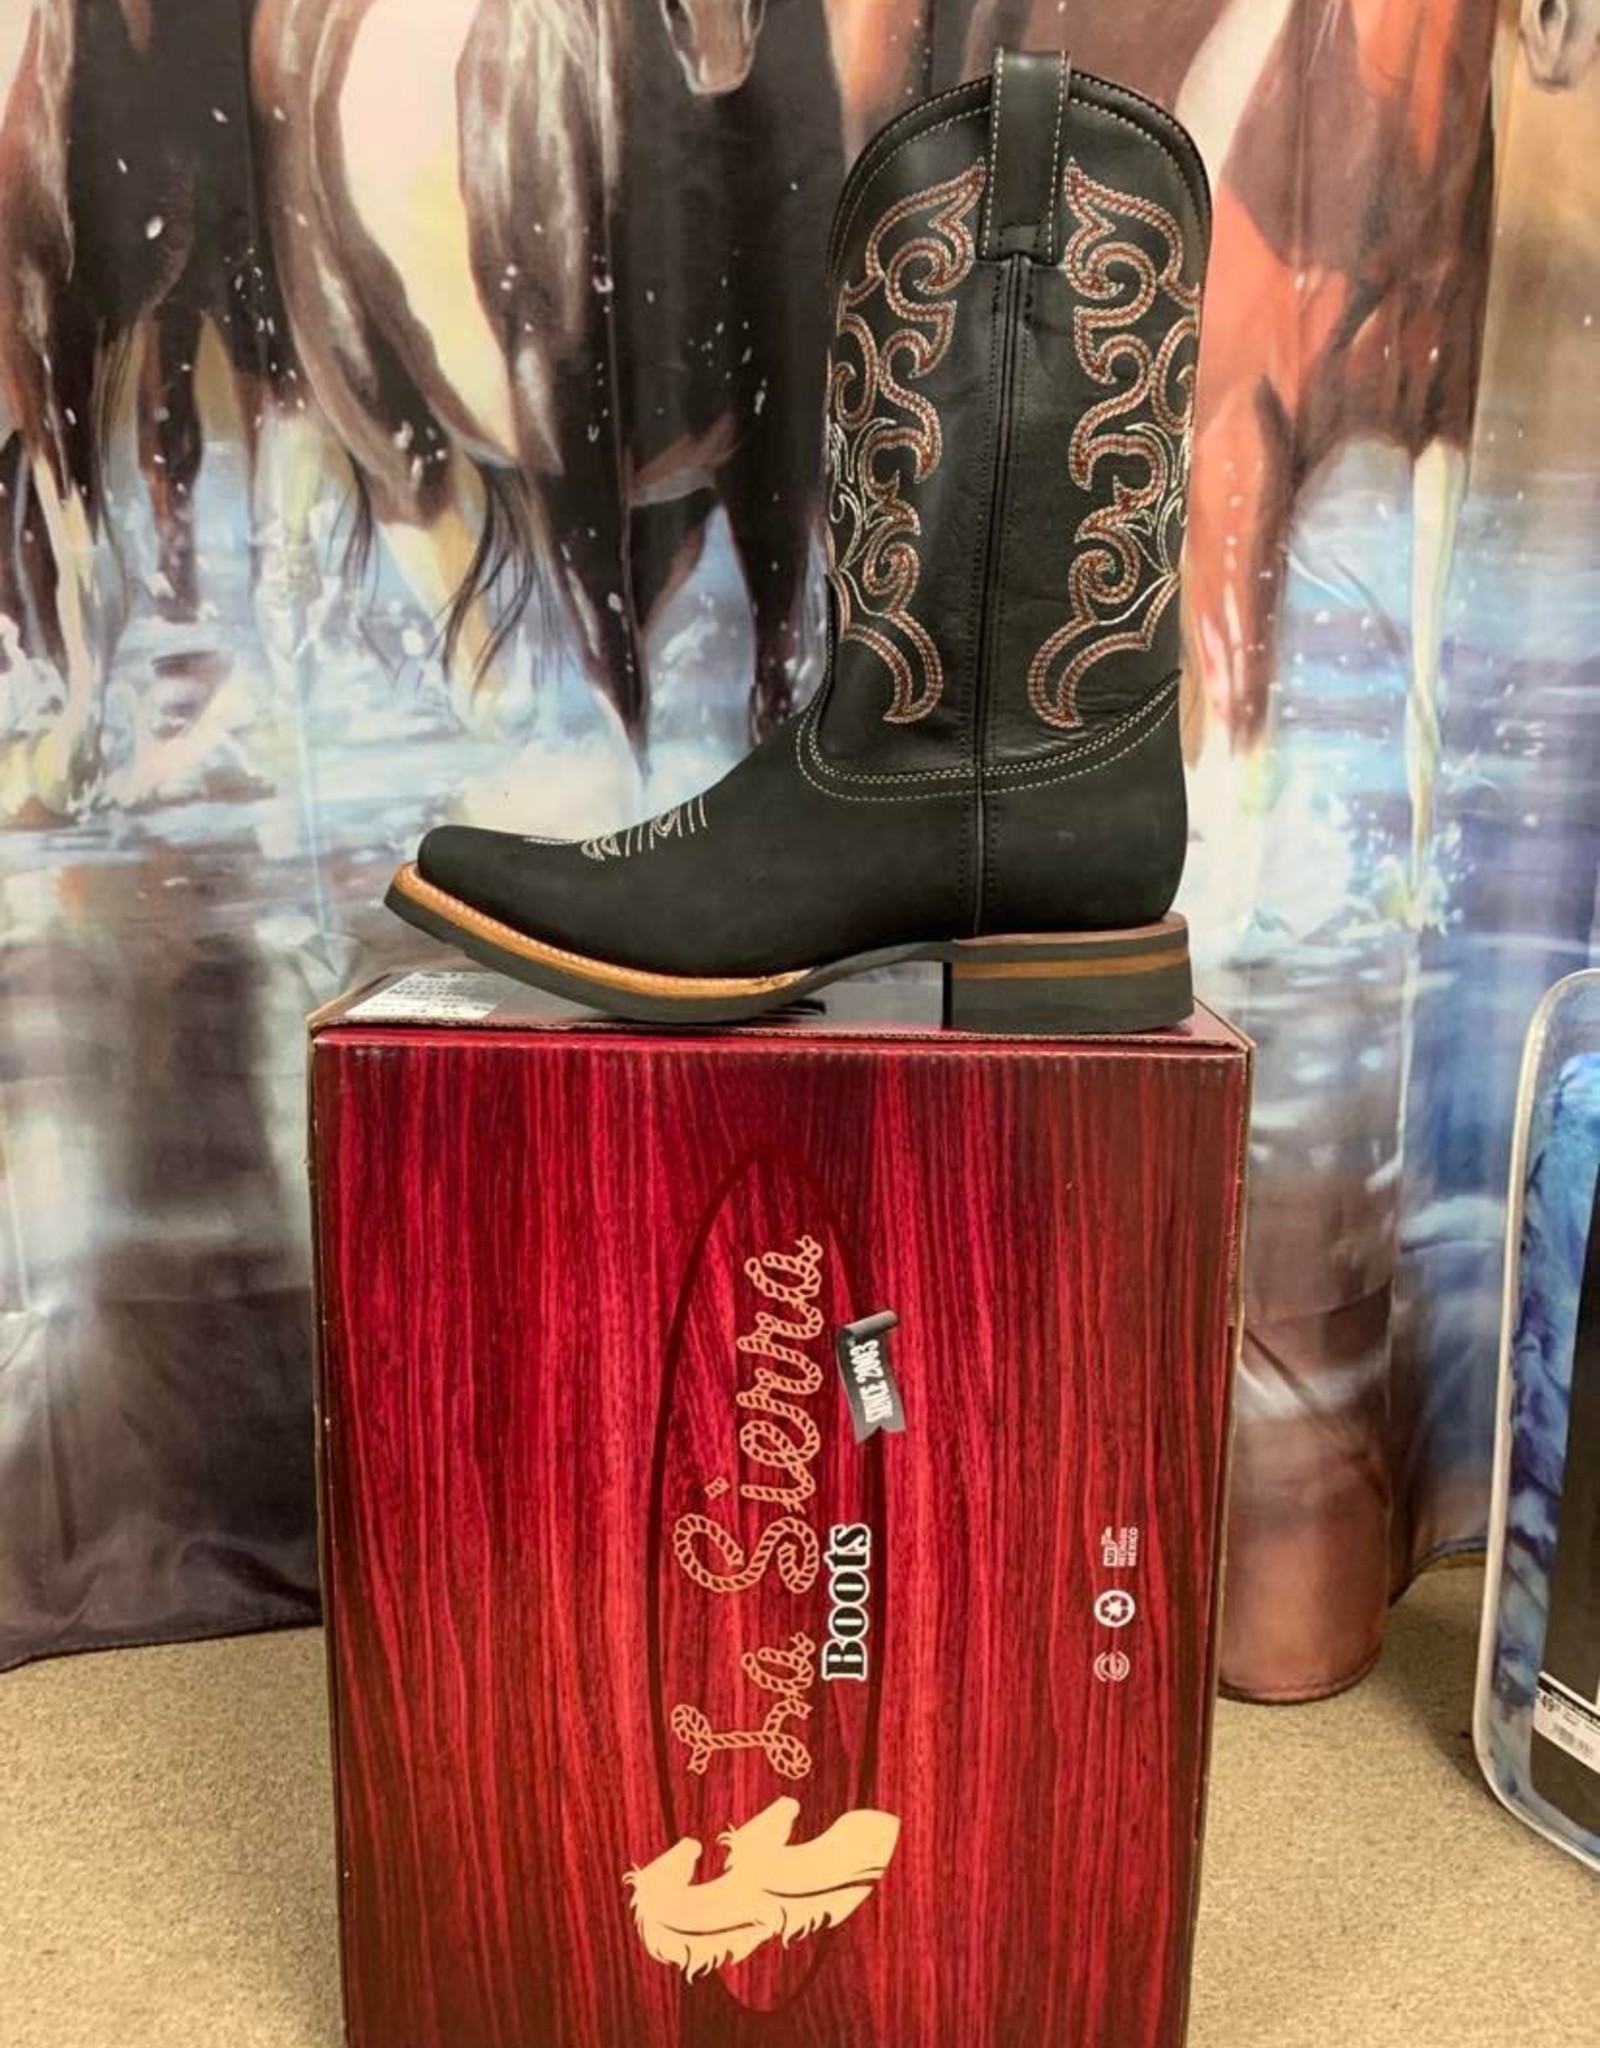 AJ Western Wear Men's western boots w sq toe